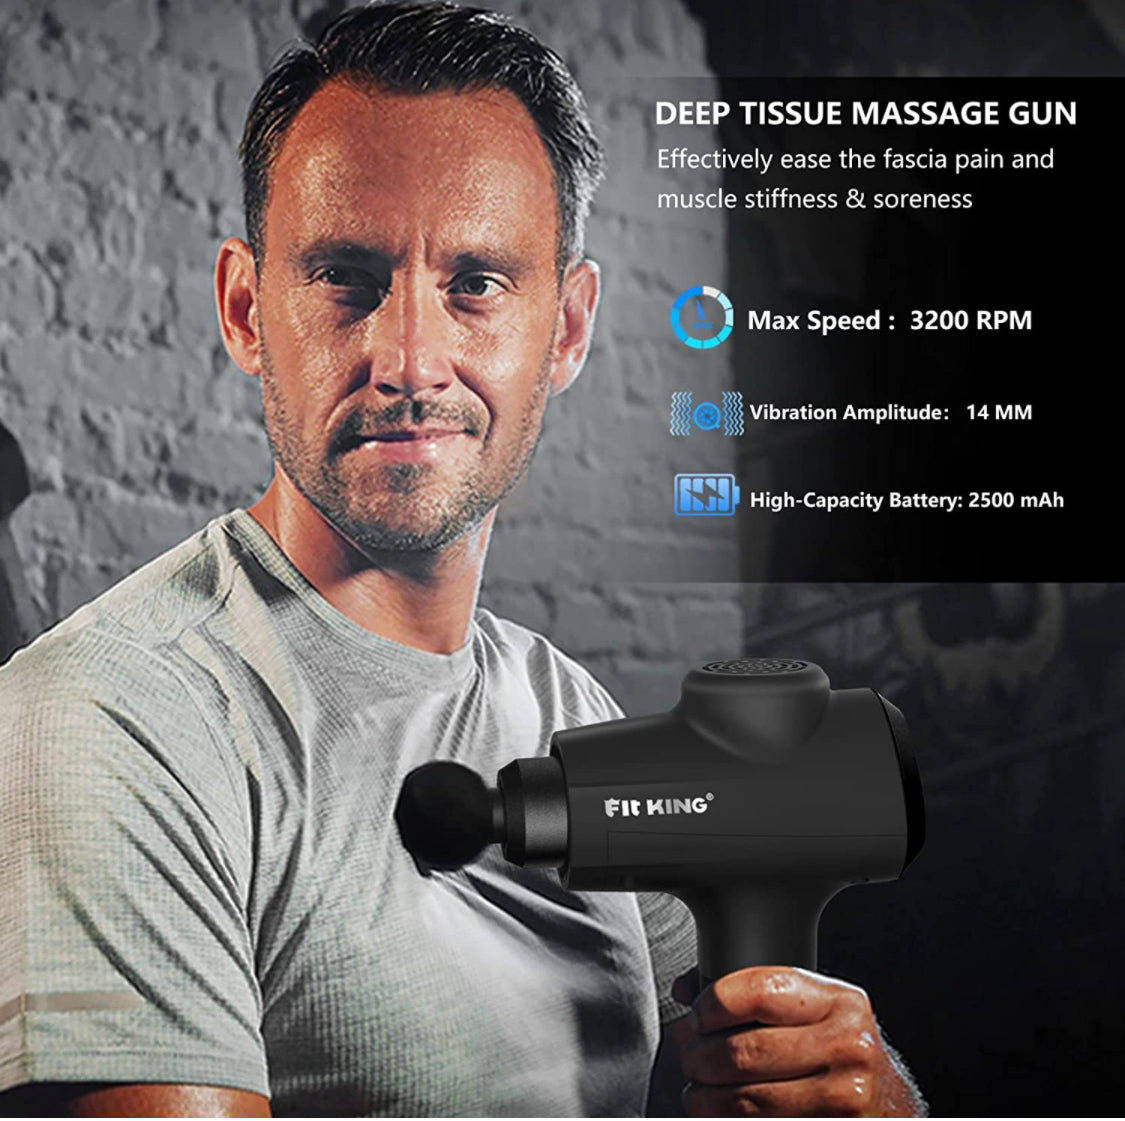 HEALTH - Deep Tissue Massage Gun